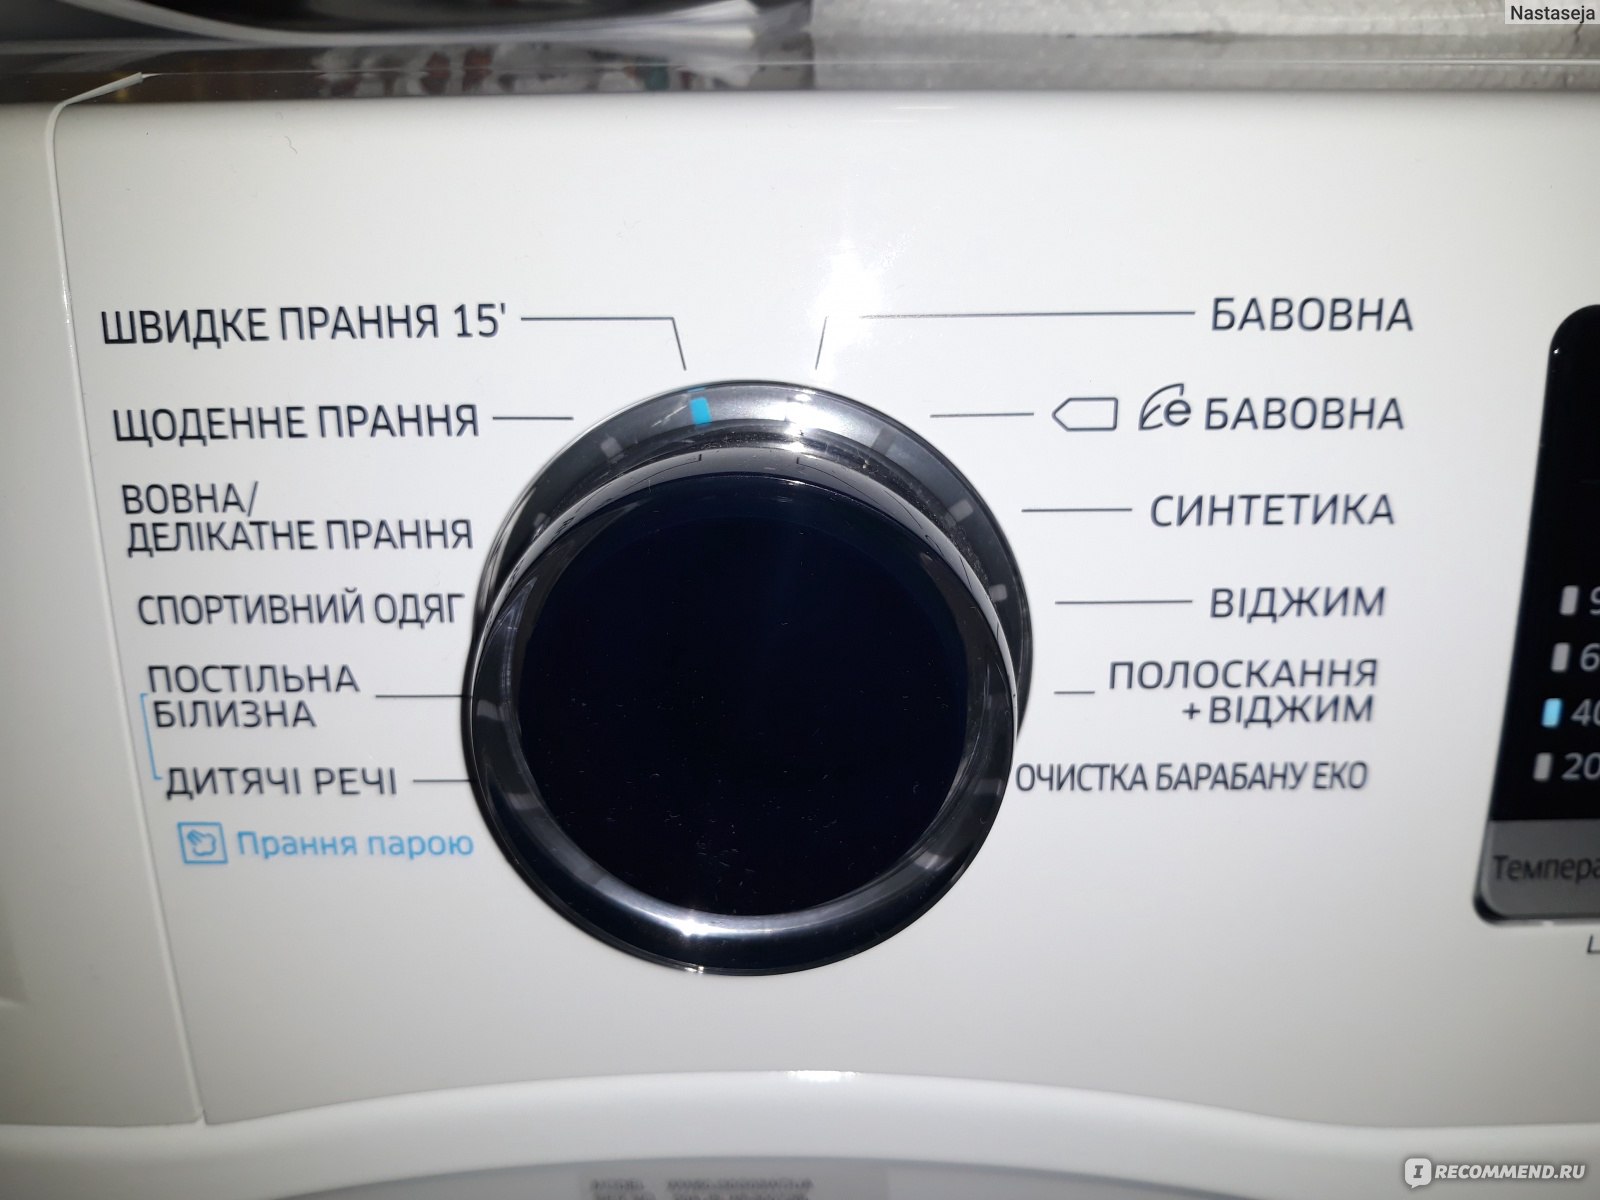 Очистка барабана eco samsung как пользоваться, что нажимать пошагово, нужны ли специальные средства 2стиралки.ру